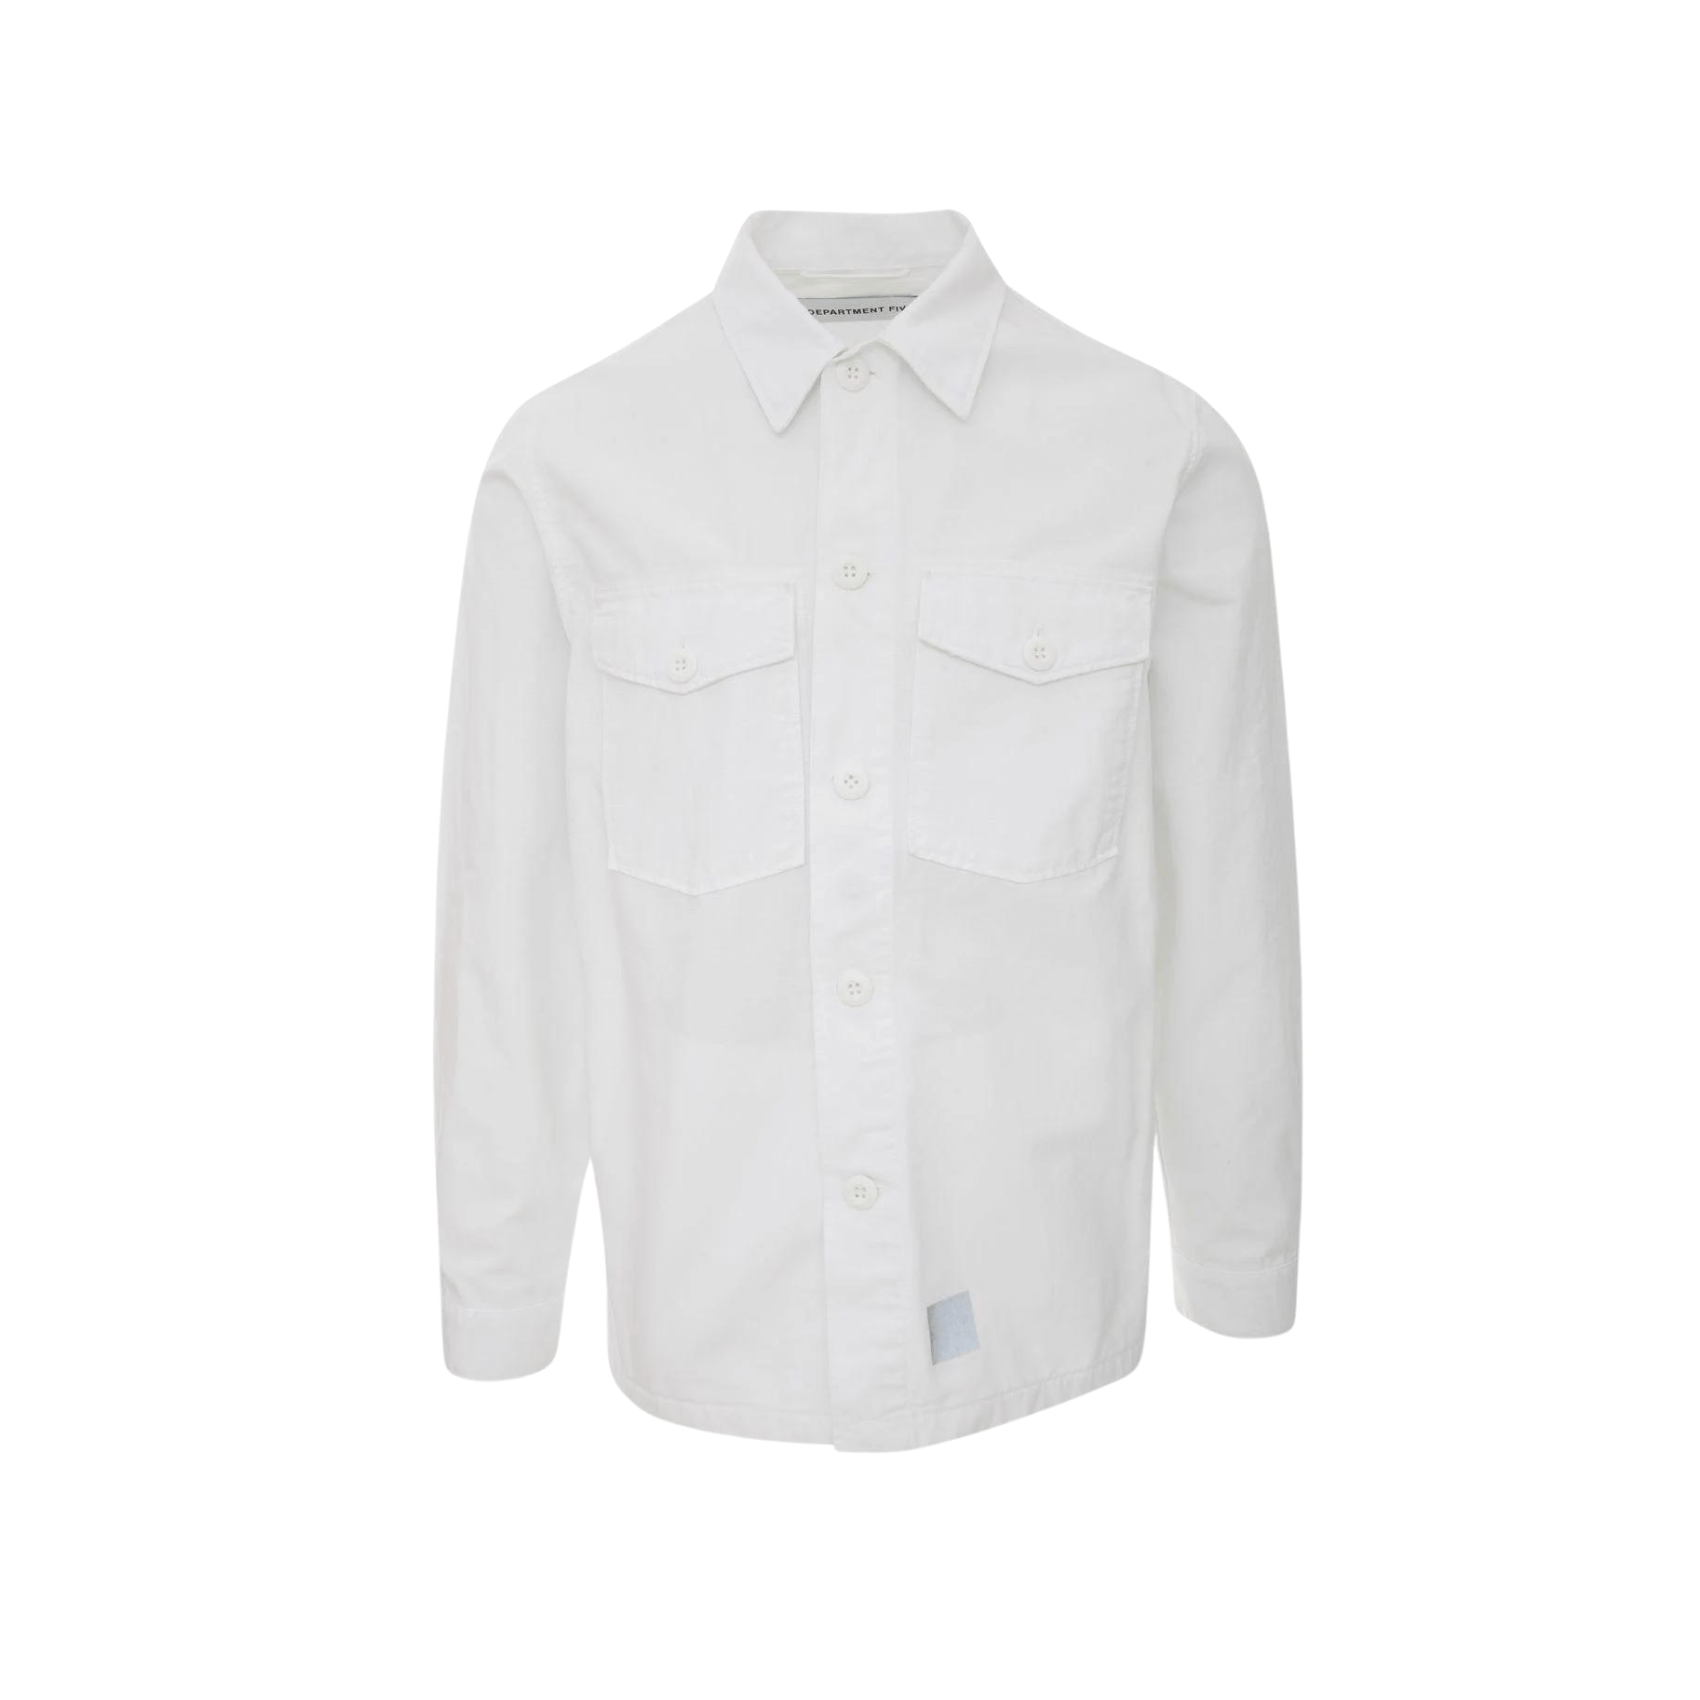 Broz Shirt - White